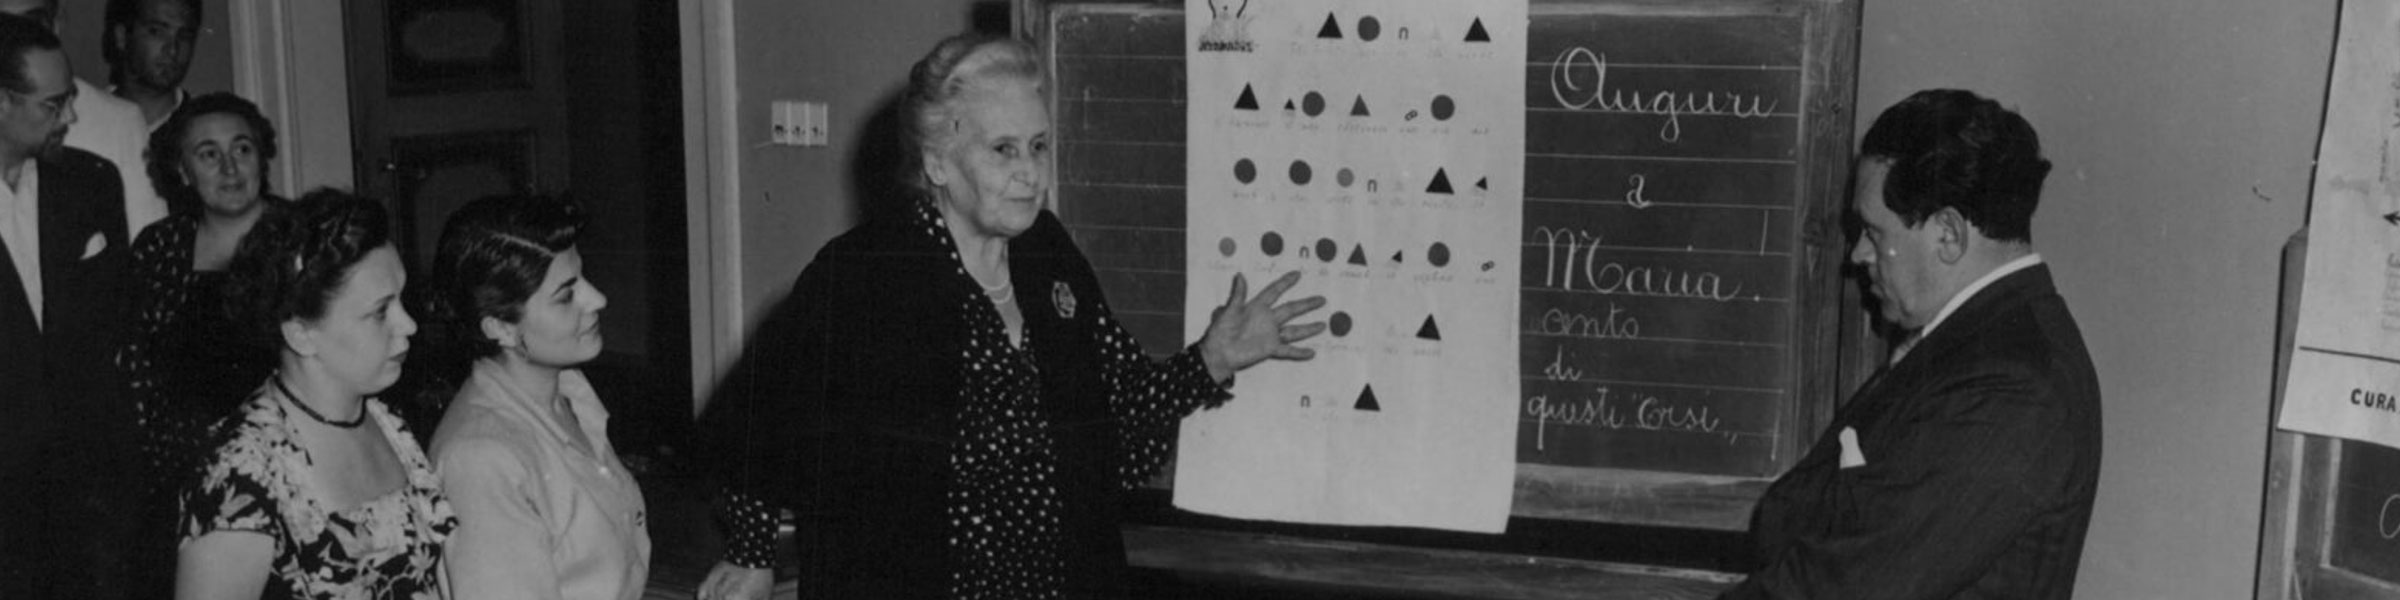 Maria and Mario Montessori discussing grammar symbols at the 1950 Perugia training course